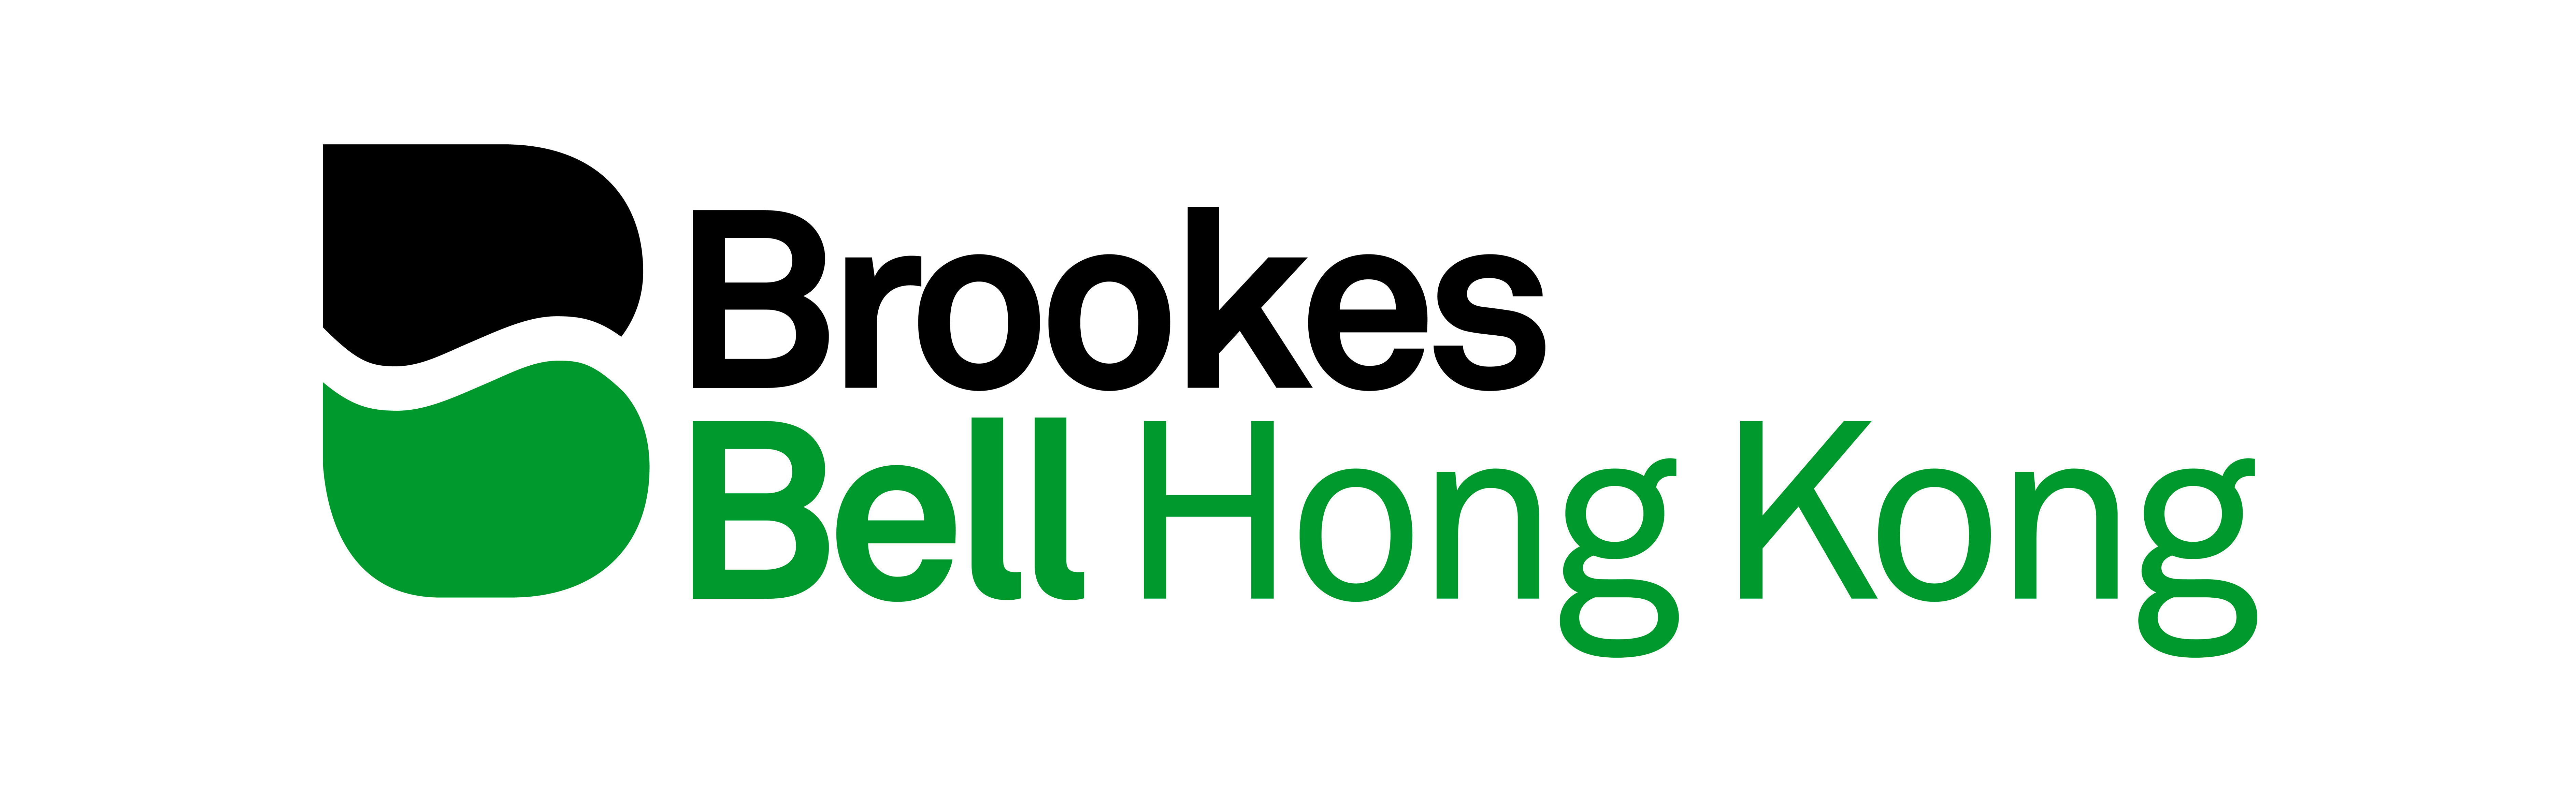 Brookes Bell Hong Kong Ltd